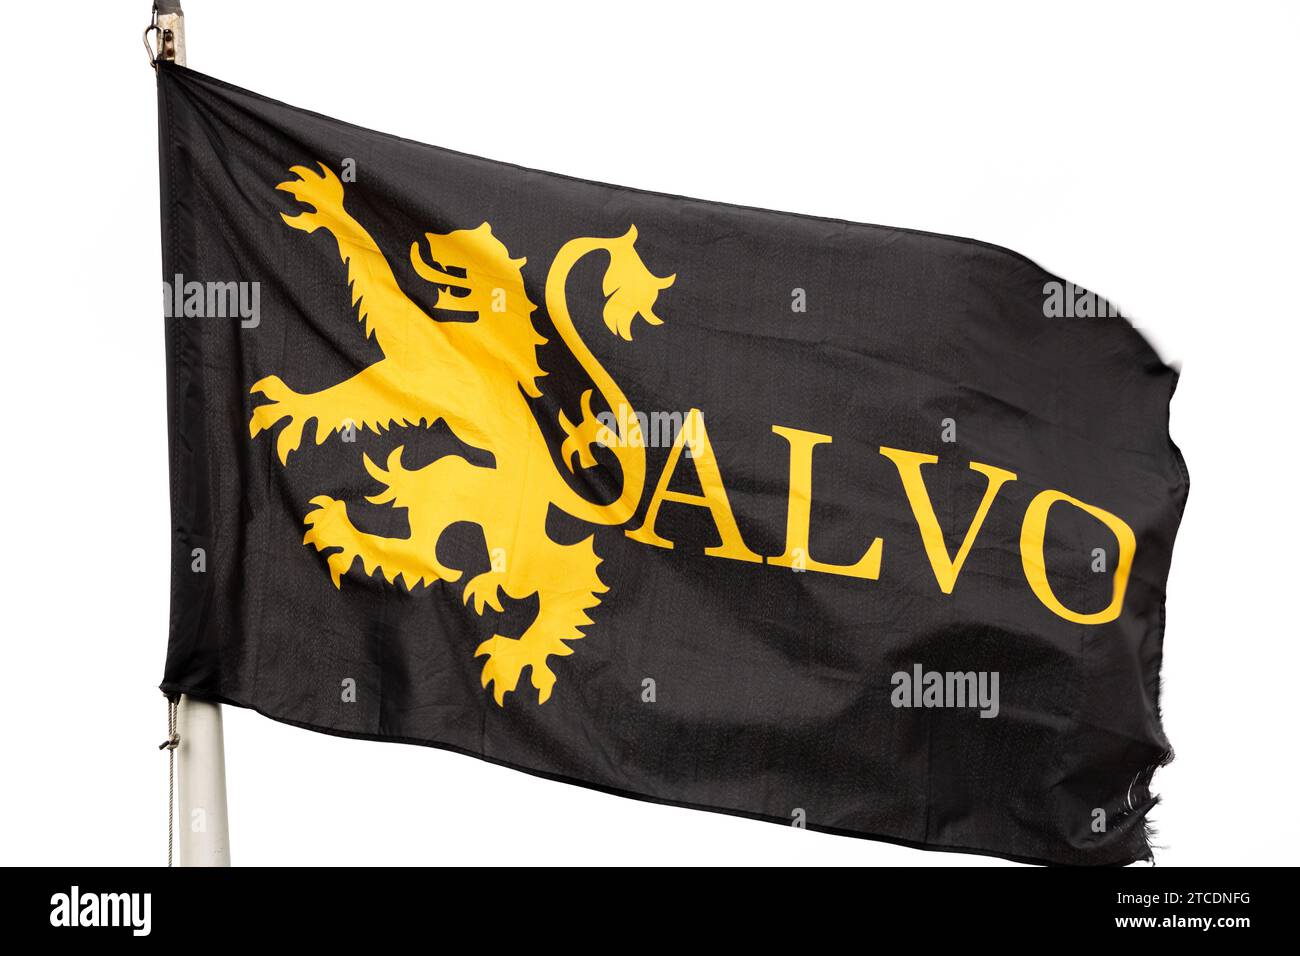 Salvo est un bras de campagne de Liberation Scotland, qui vise à restaurer la souveraineté de l'Écosse Banque D'Images